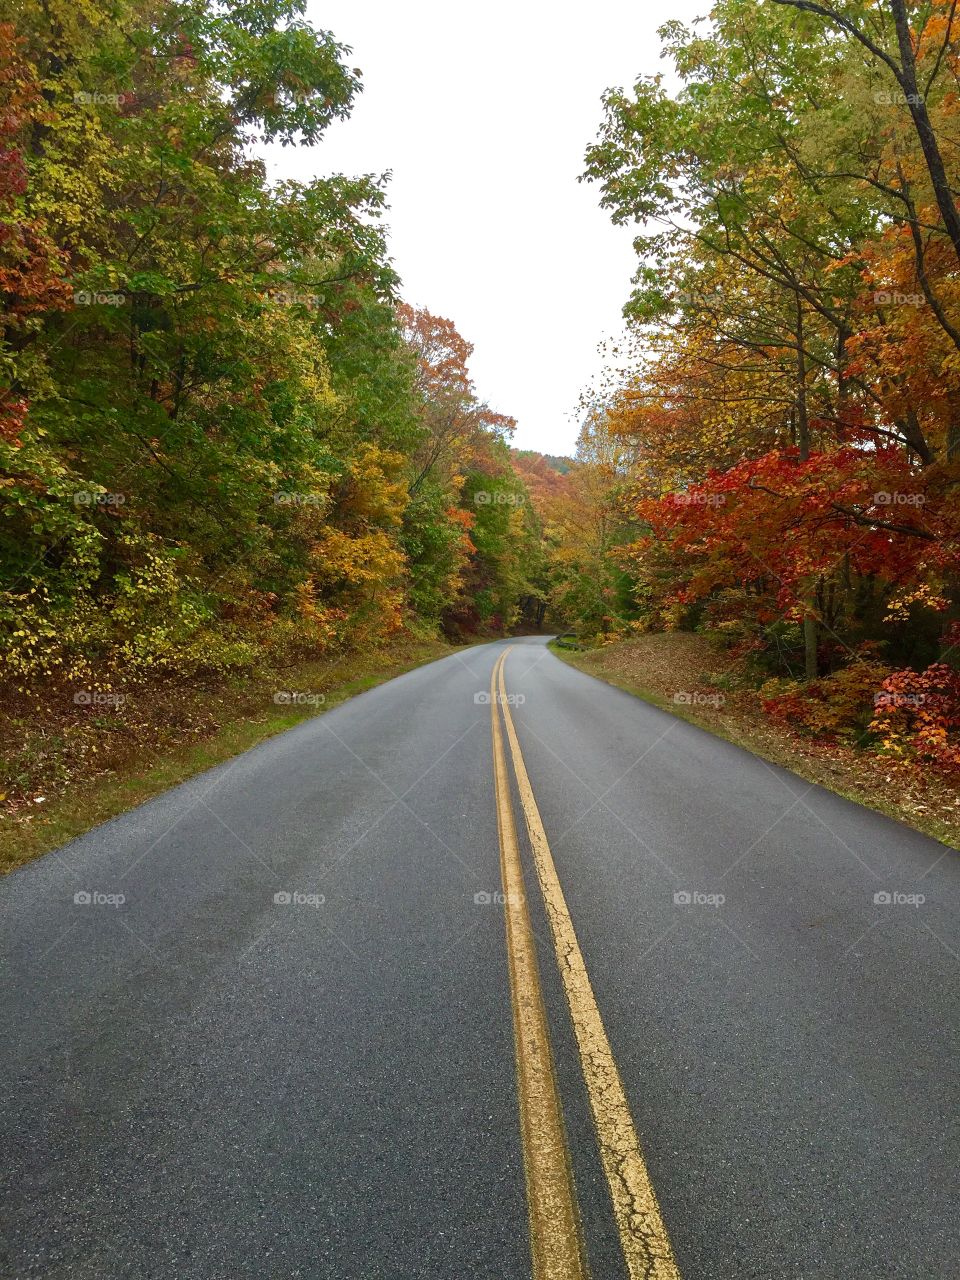 Fall at blue ridge parkway 